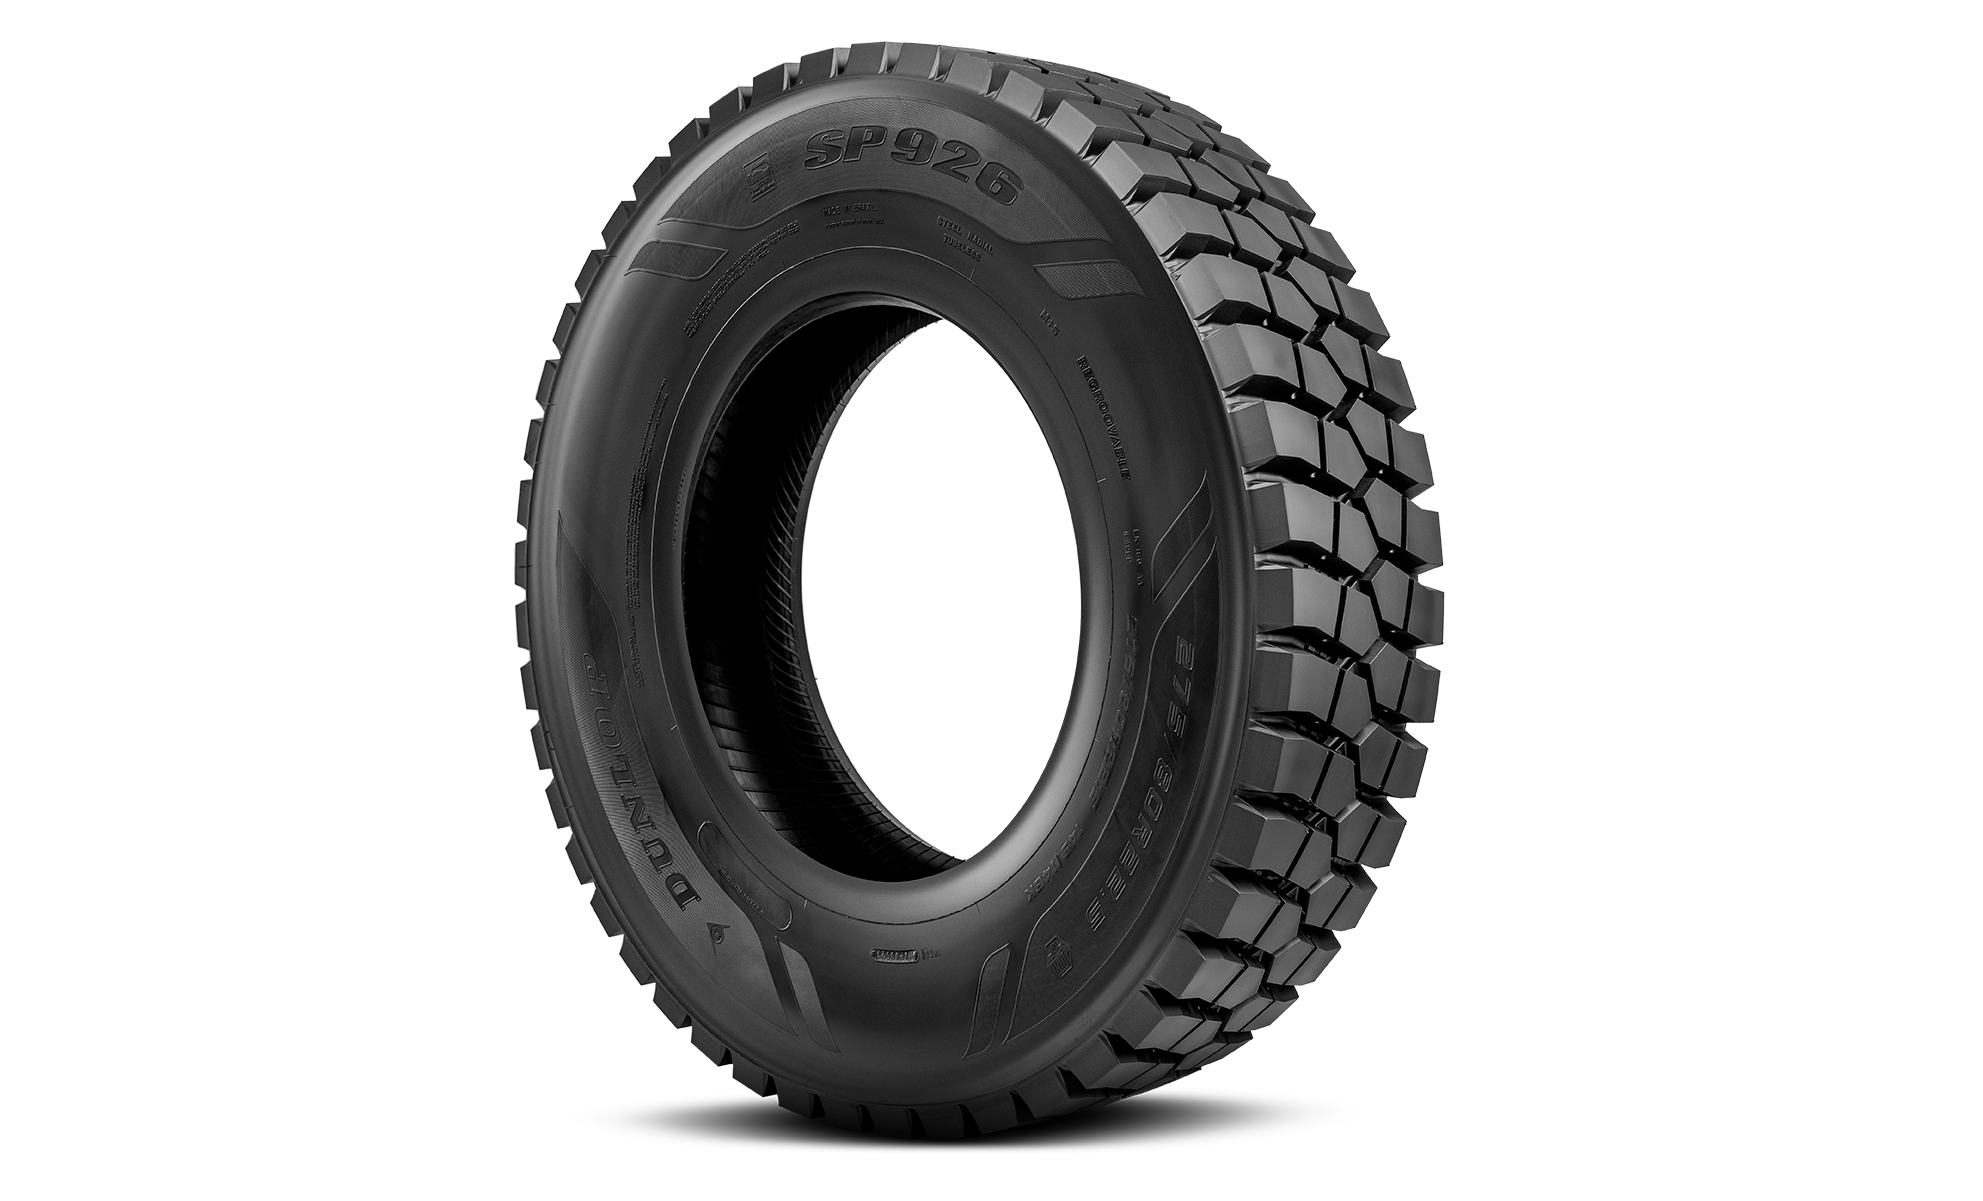 Dunlop lança pneu de caminhão para uso em trajetos mistos